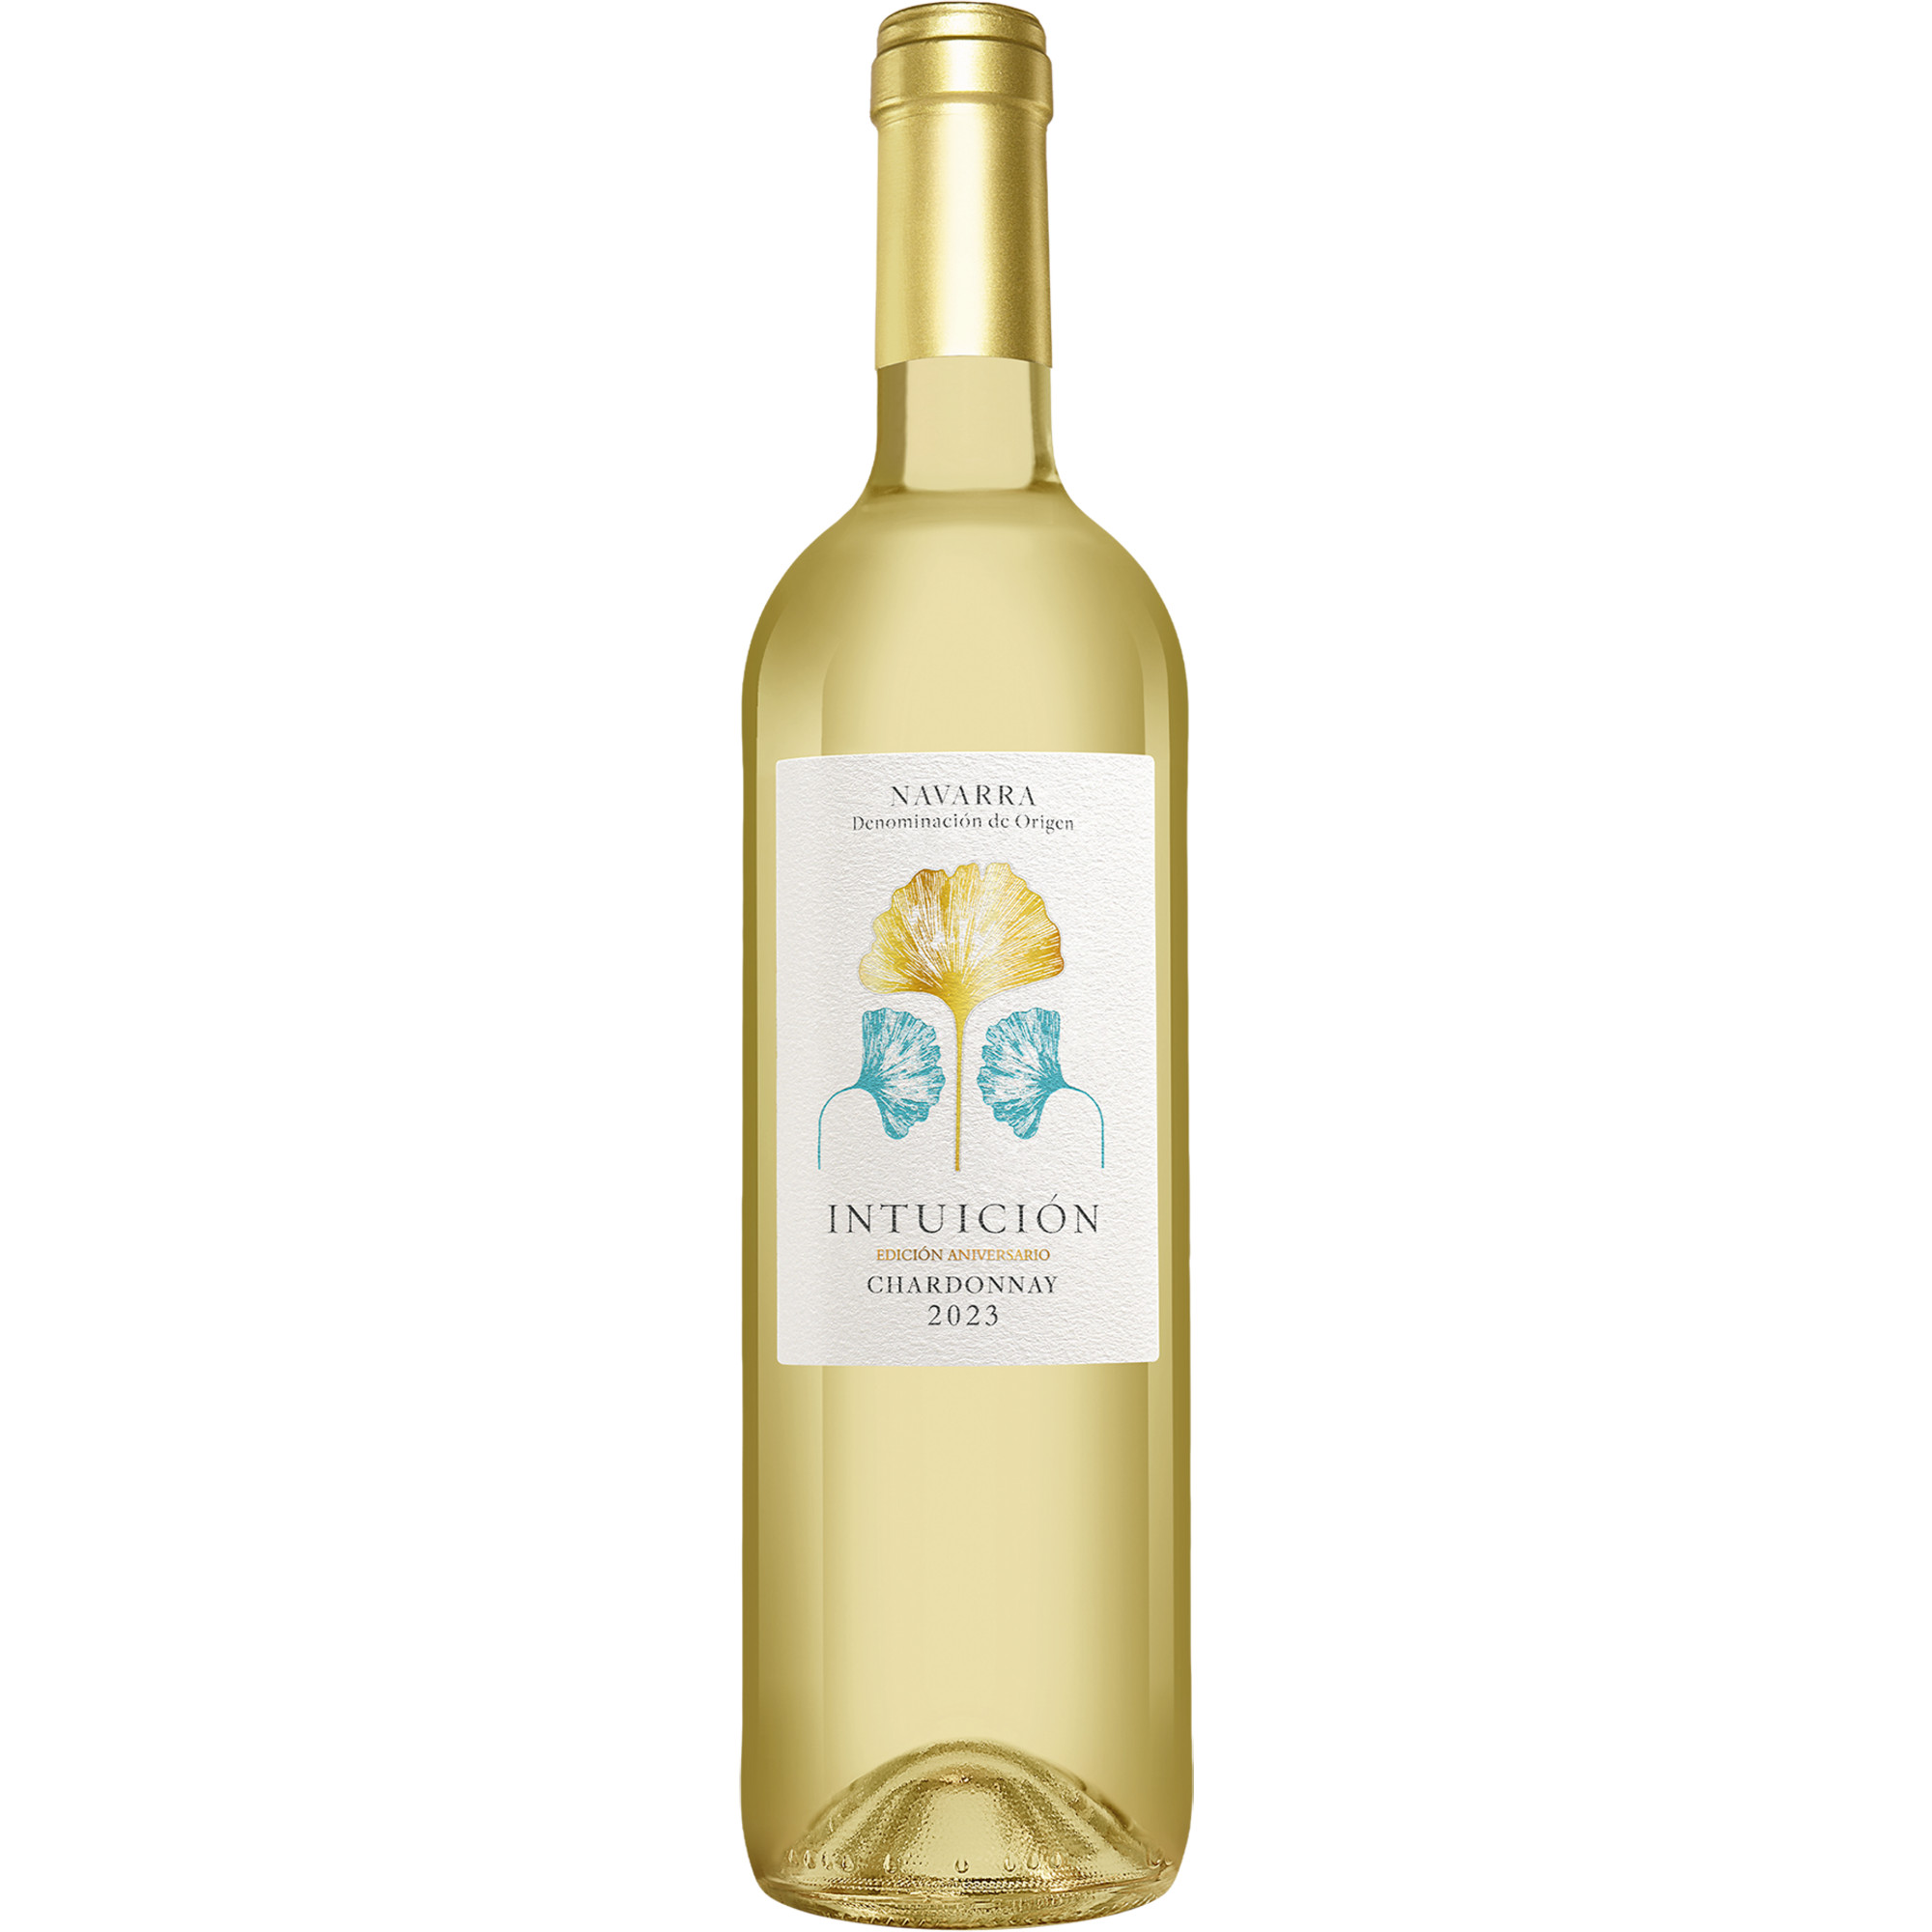 Intuición »Aniversario« Chardonnay 2023  013% Vol. Weißwein Trocken aus Spanien